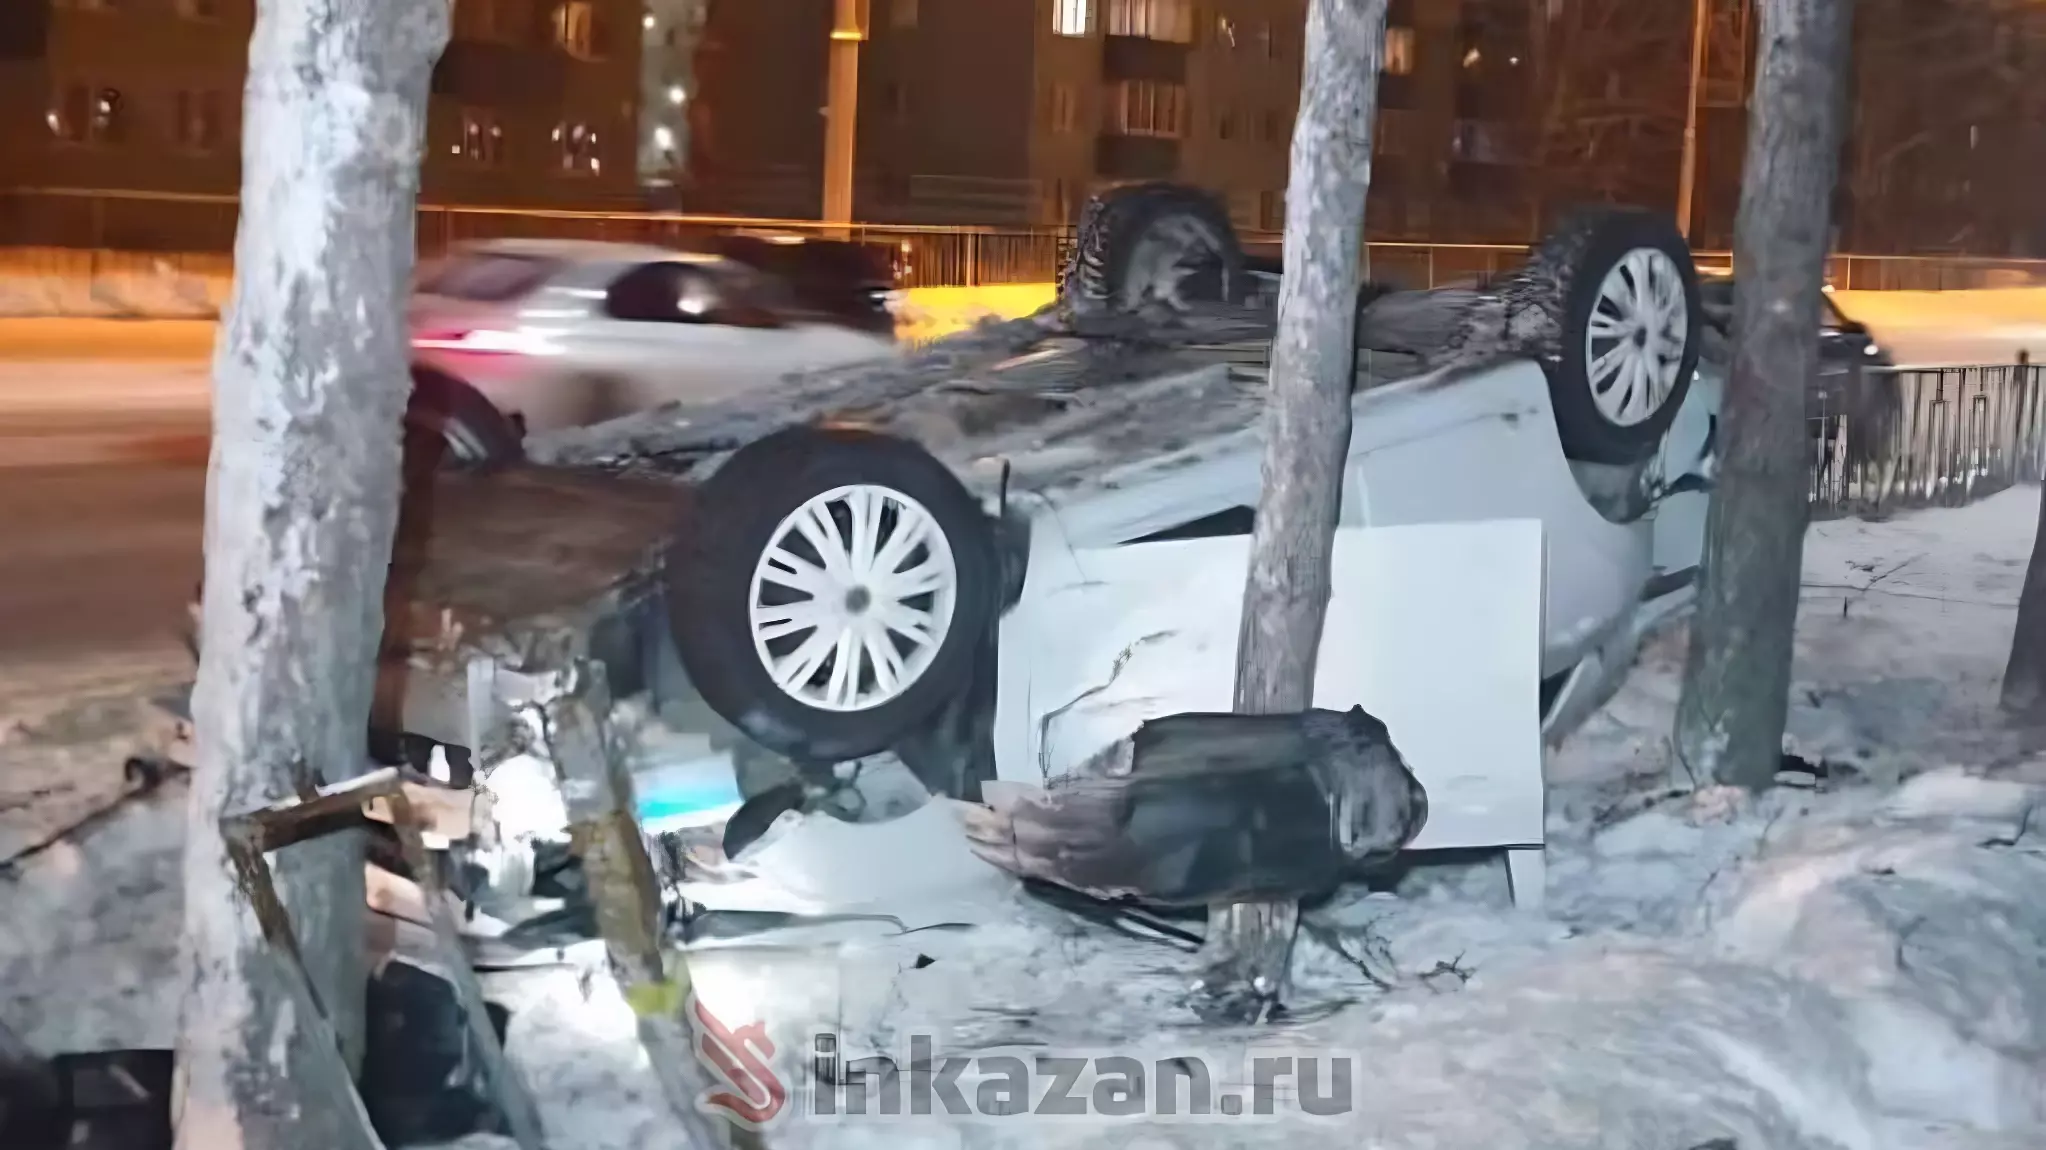 Три человека пострадали в ДТП у парка в Альметьевске